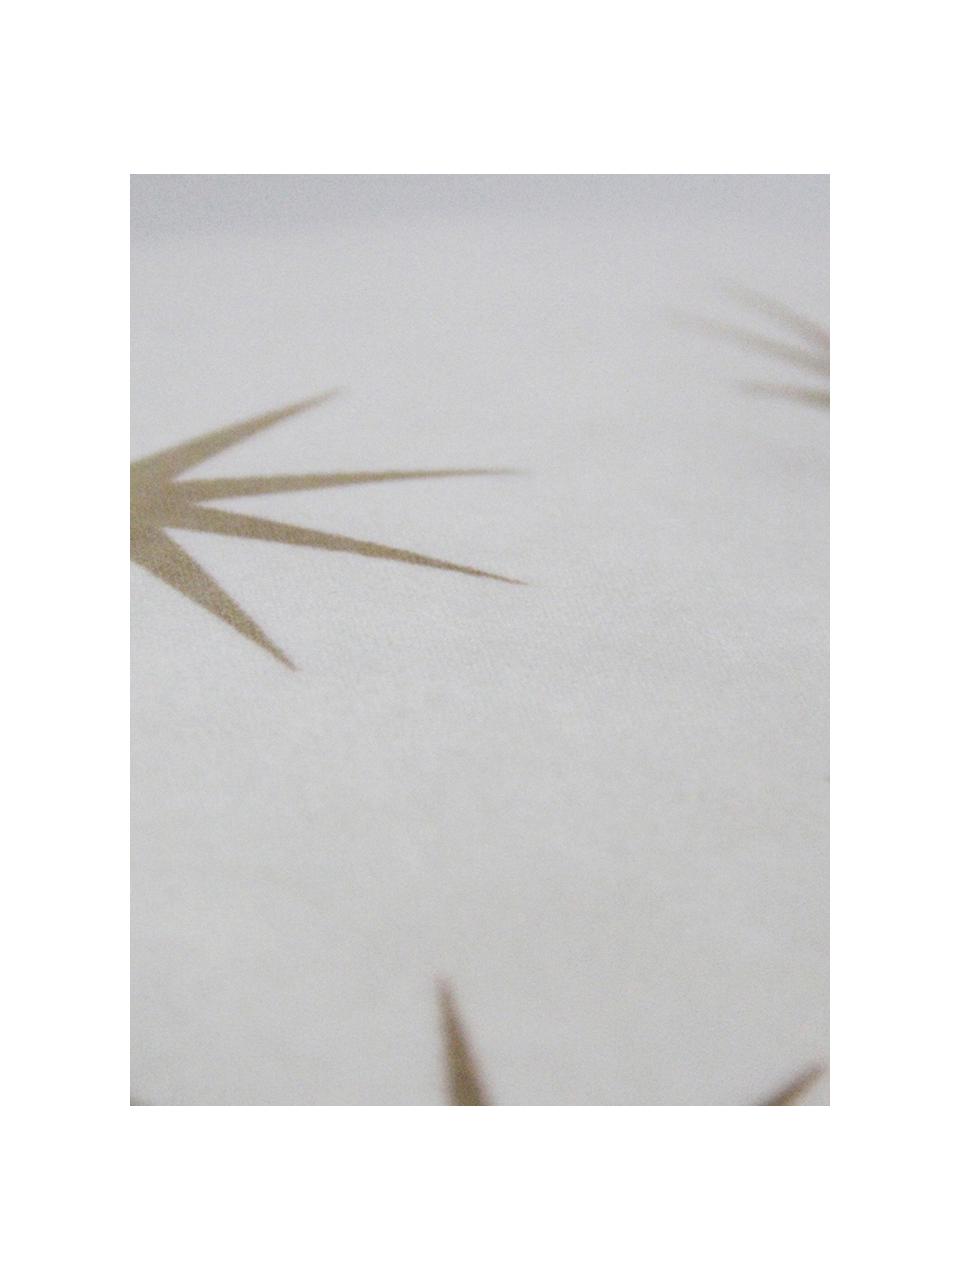 Fluwelen kussenhoes Stars met gouden sterren geborduurd, Polyesterfluweel, Wit, bruin, 45 x 45 cm